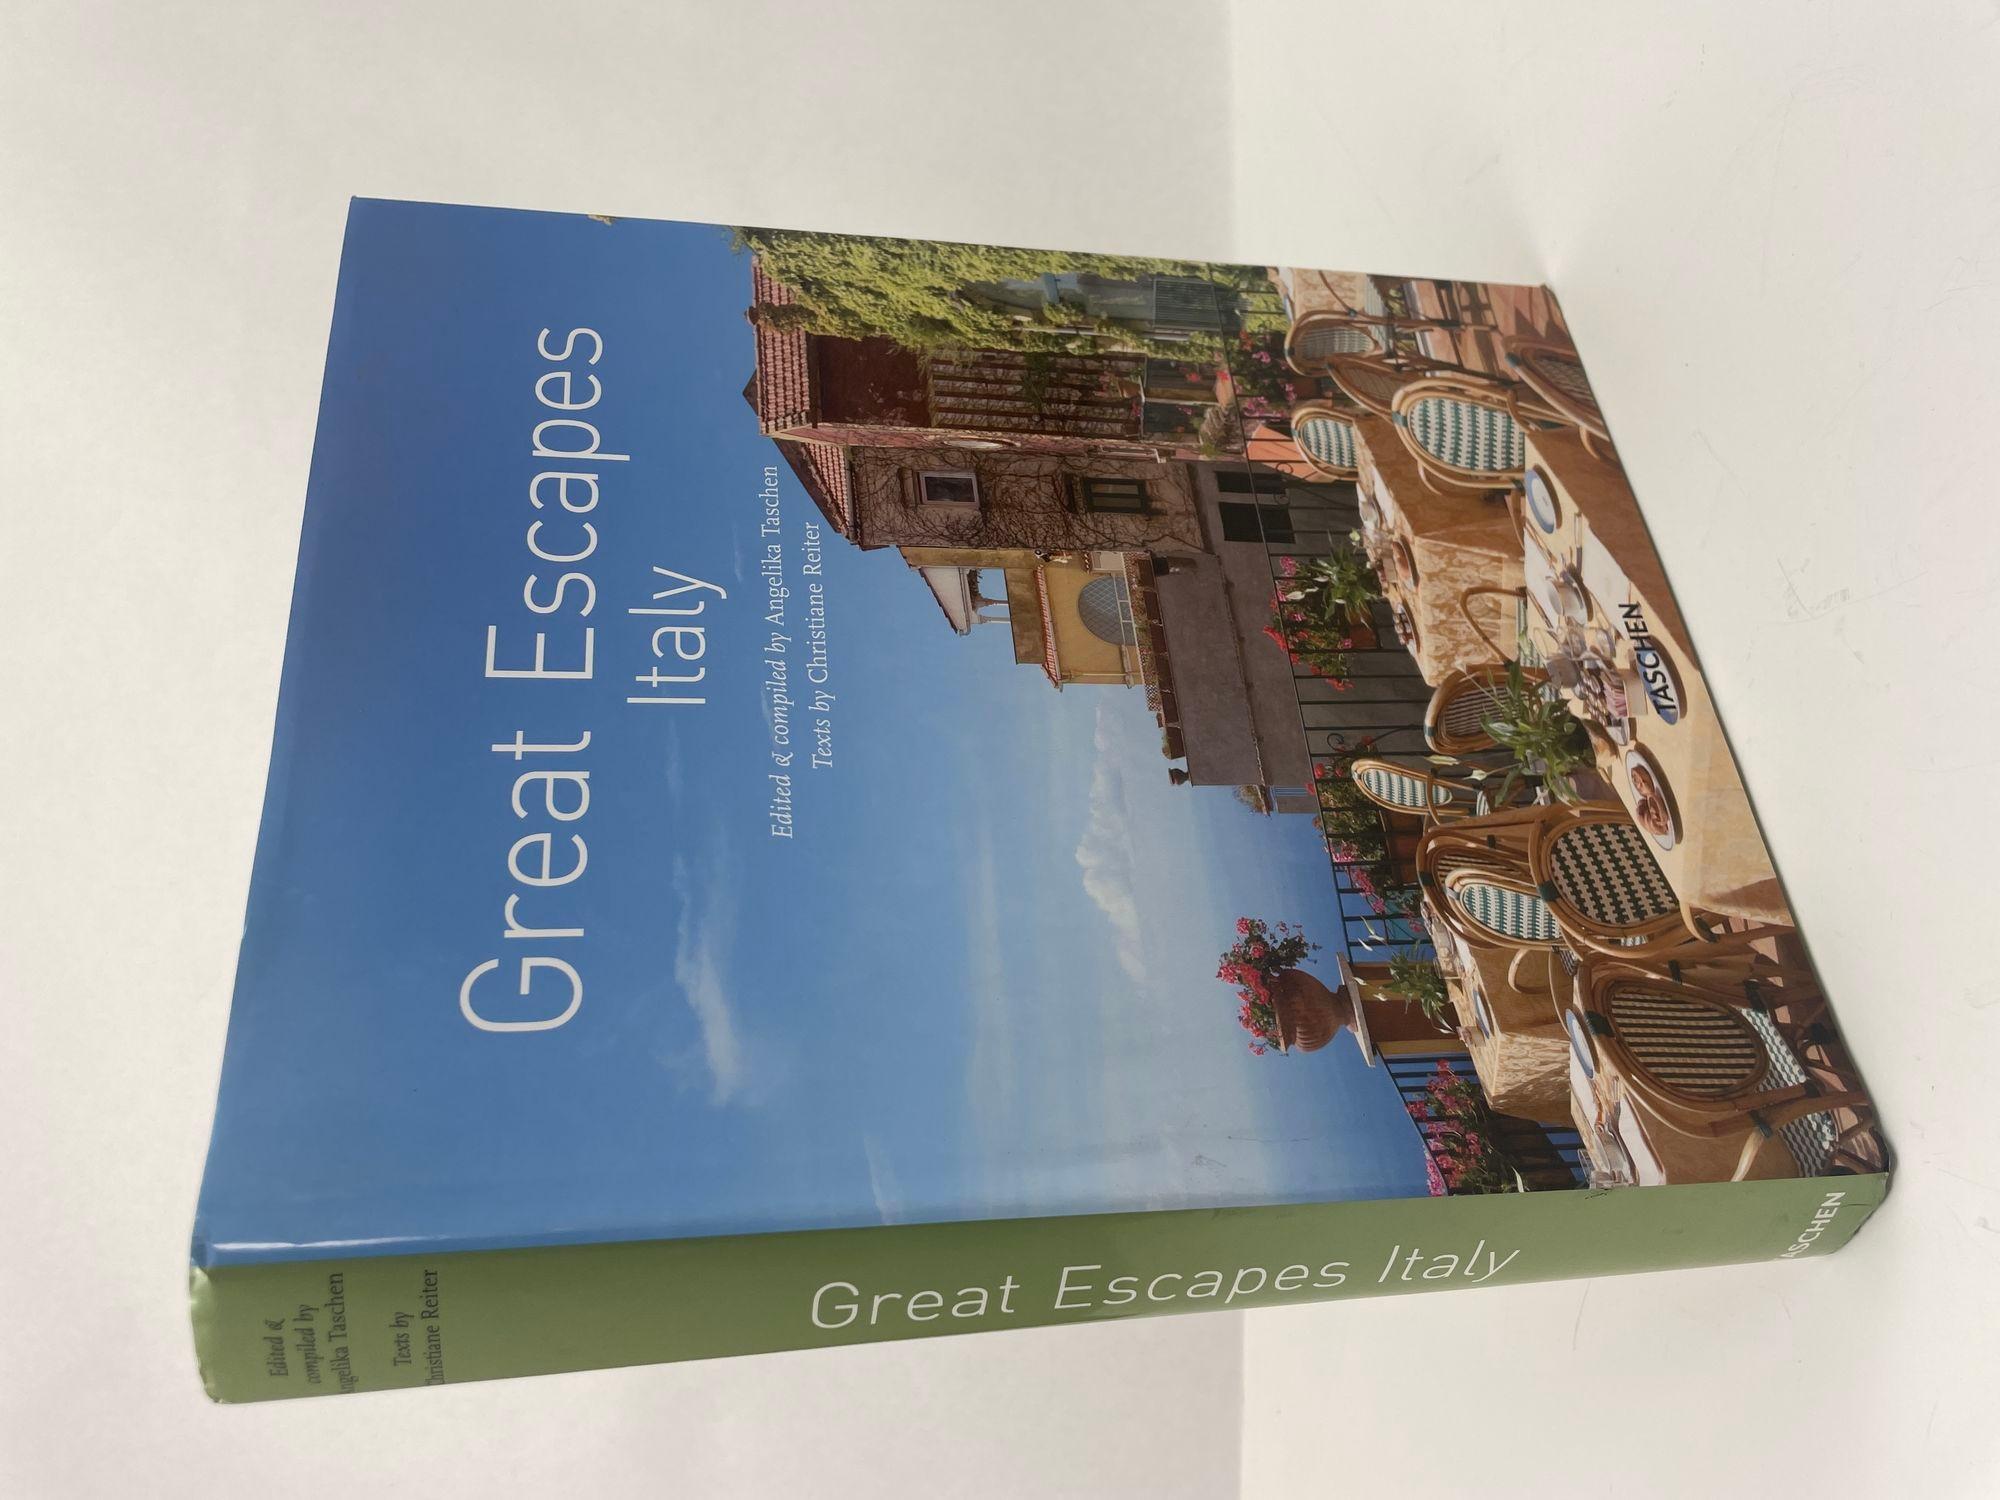 Great Escapes: Italien Angelika Taschen und Christiane Reiter Hardcover Buch.
Eine Reise durch Italien ist dem Paradies am nächsten. Seit Jahrhunderten zieht es Schriftsteller, Künstler, Architekten und Kaufleute hierher, inspiriert durch die